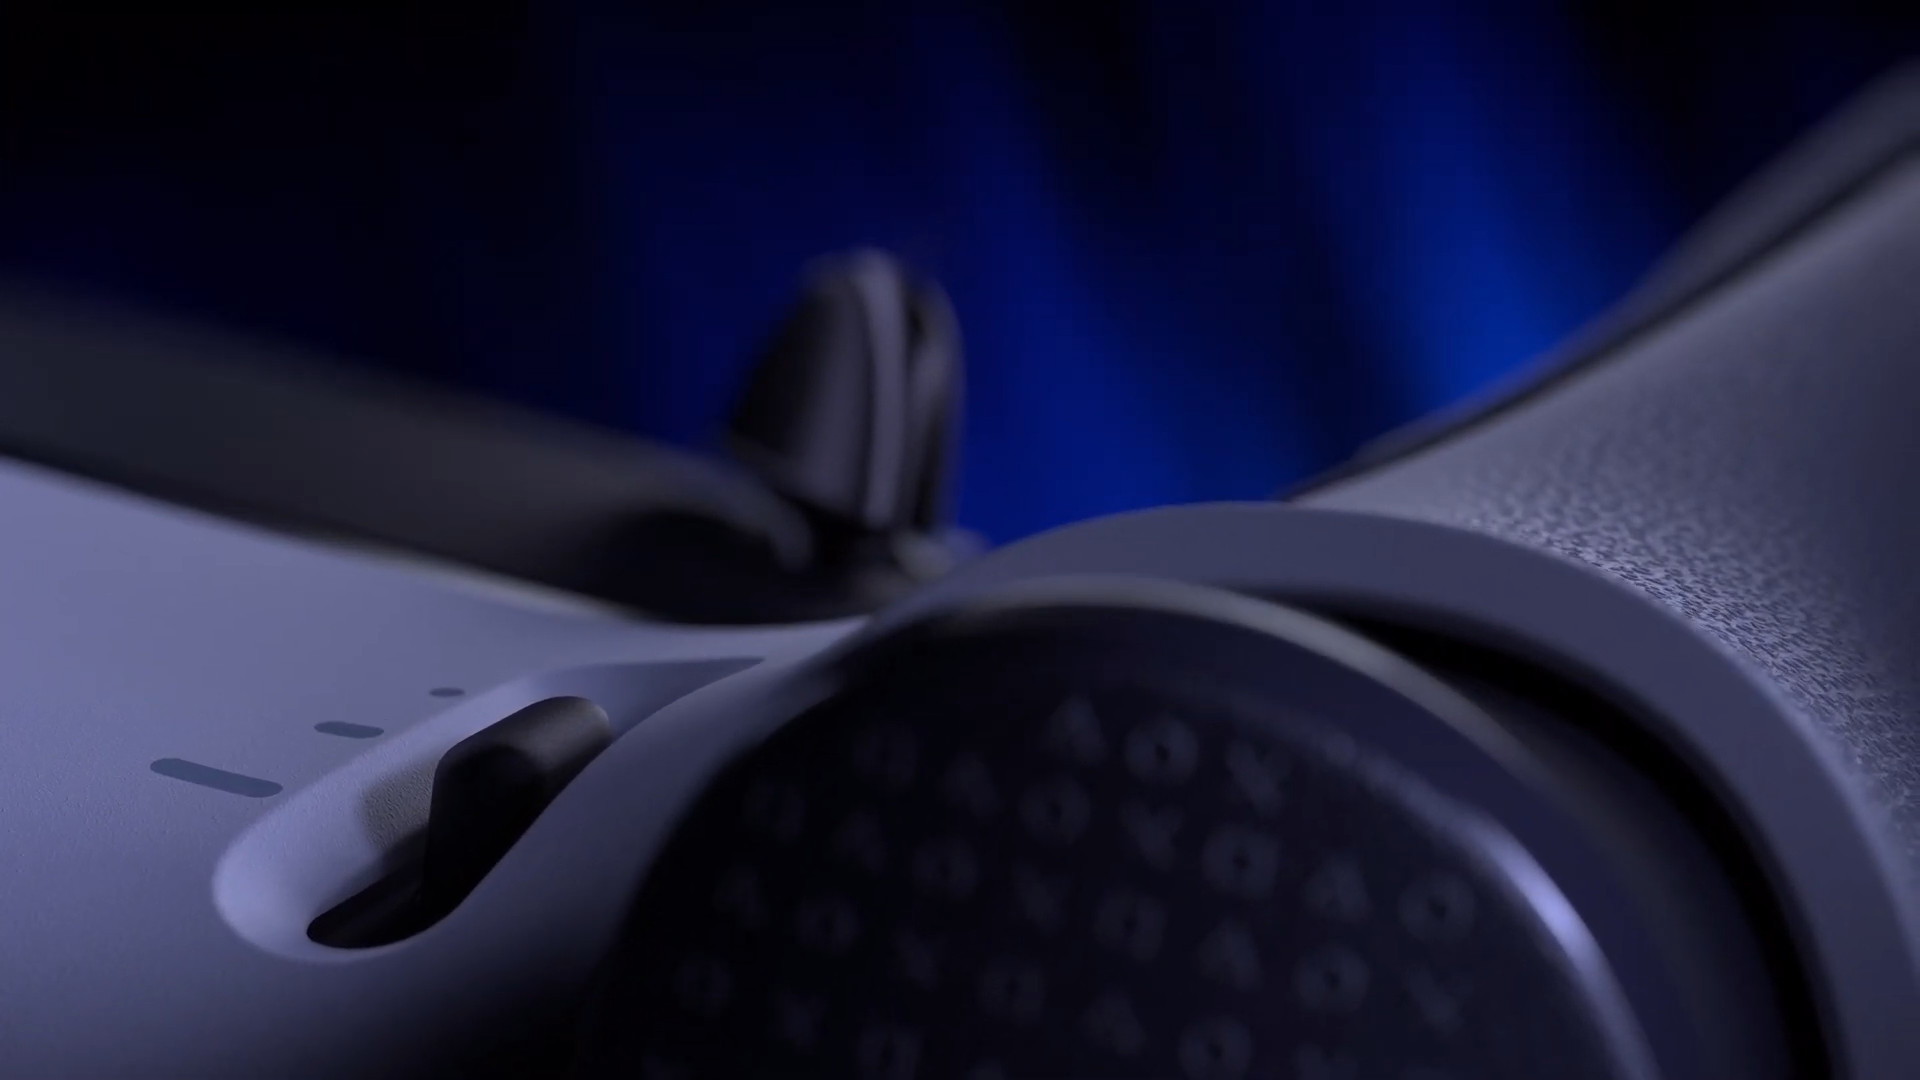 Novo comando DualSense Edge para a PS5 chega em janeiro, mas custa 240  euros - Computadores - SAPO Tek